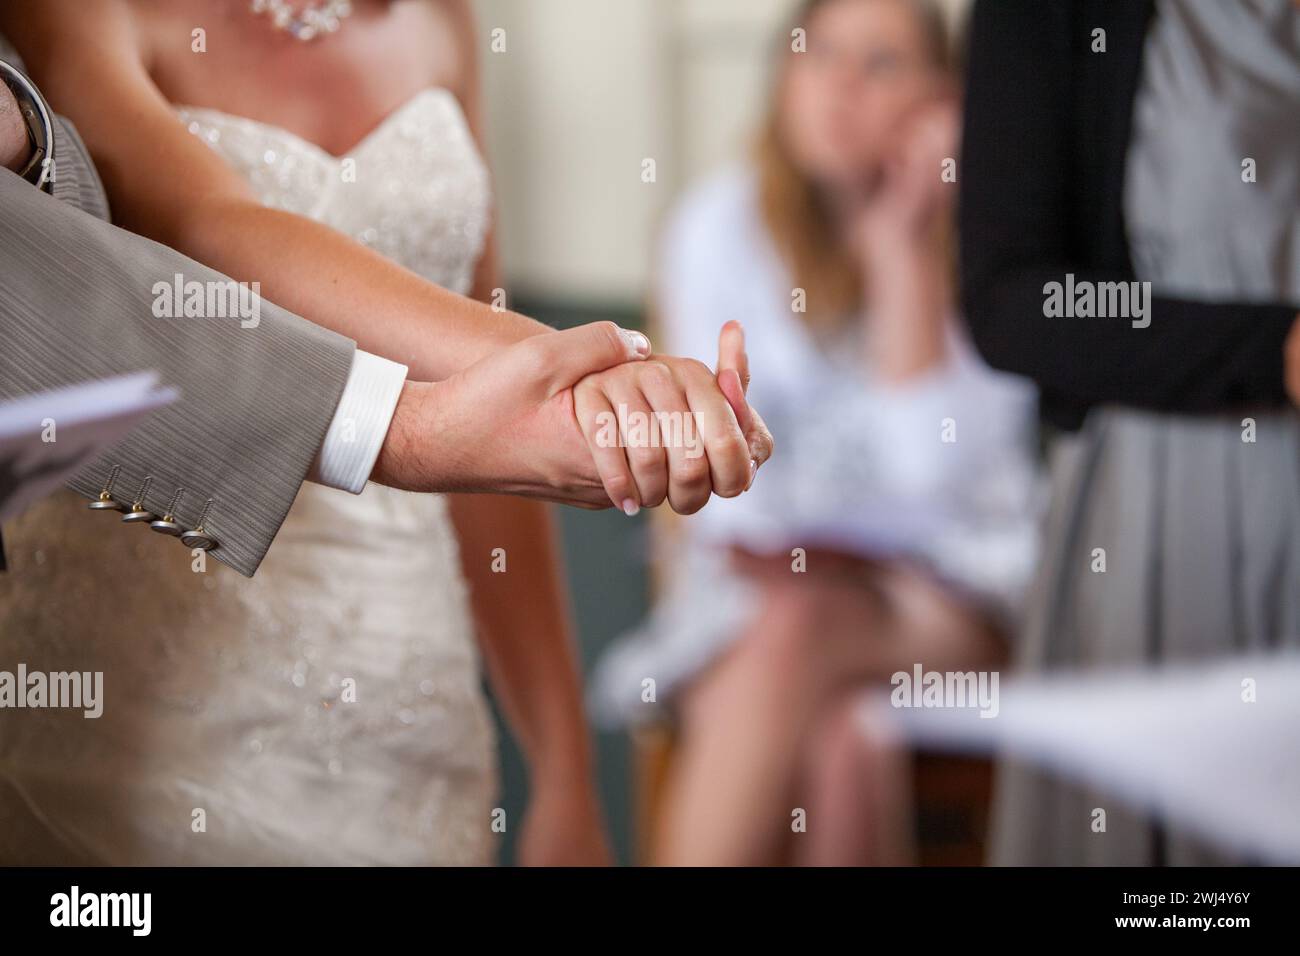 Patto di matrimonio: Stretta di mano nuziale Foto Stock